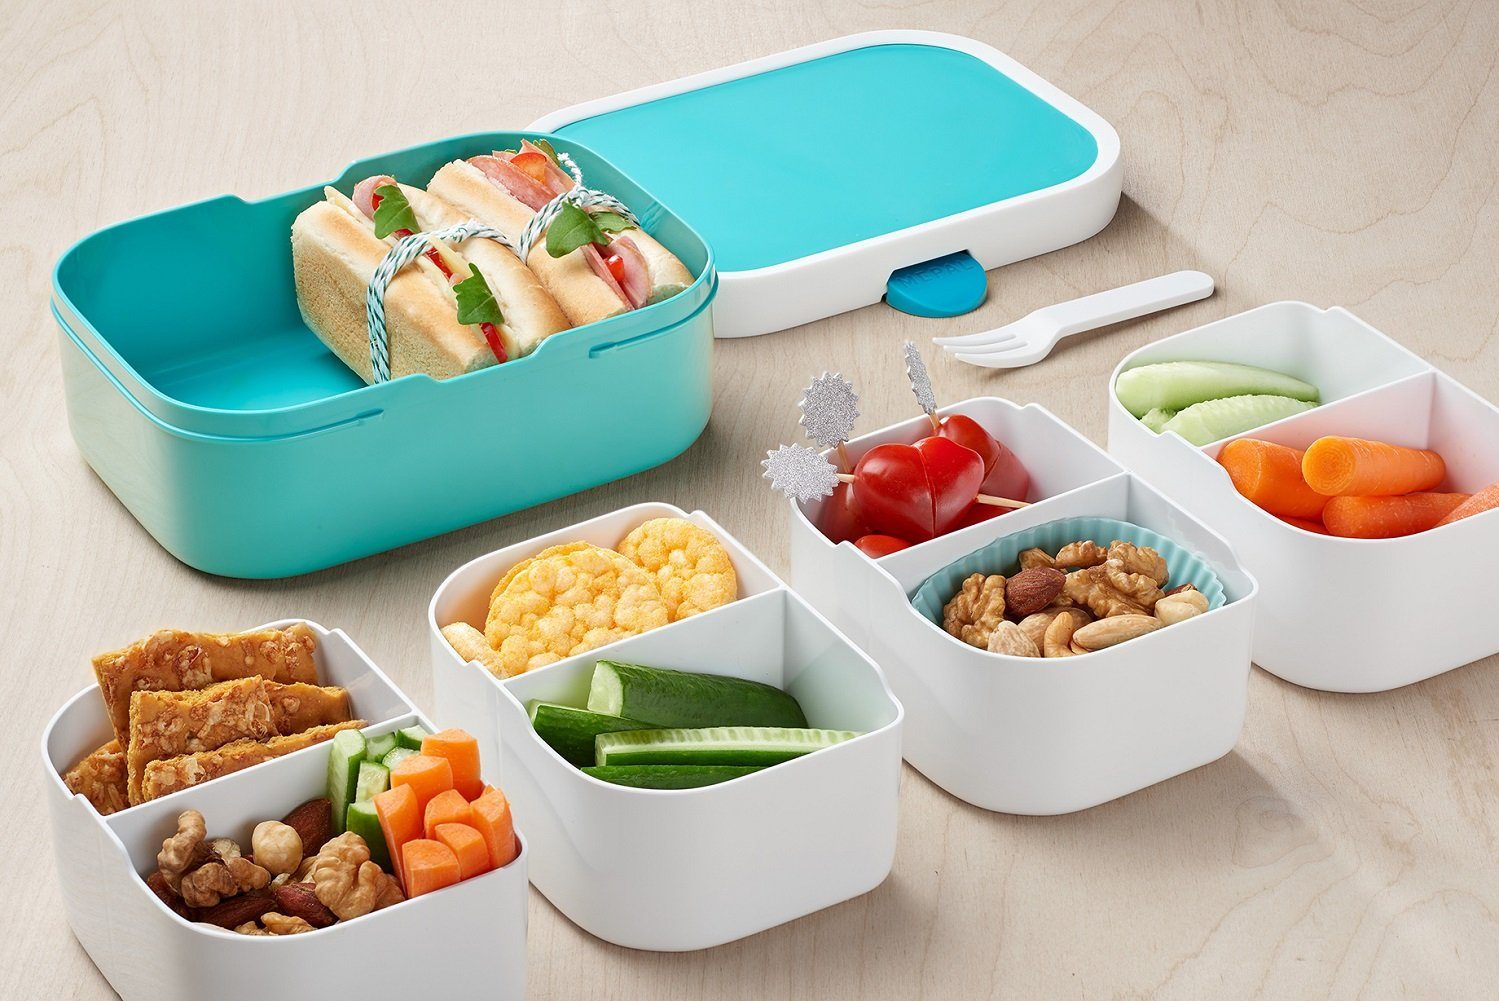 Mepal Lunchbox Einsatz Set), variabel Campus Mepal - Bentoeinsatz Gabel, und Bento (3-er inkl. Brotdose durch rosa